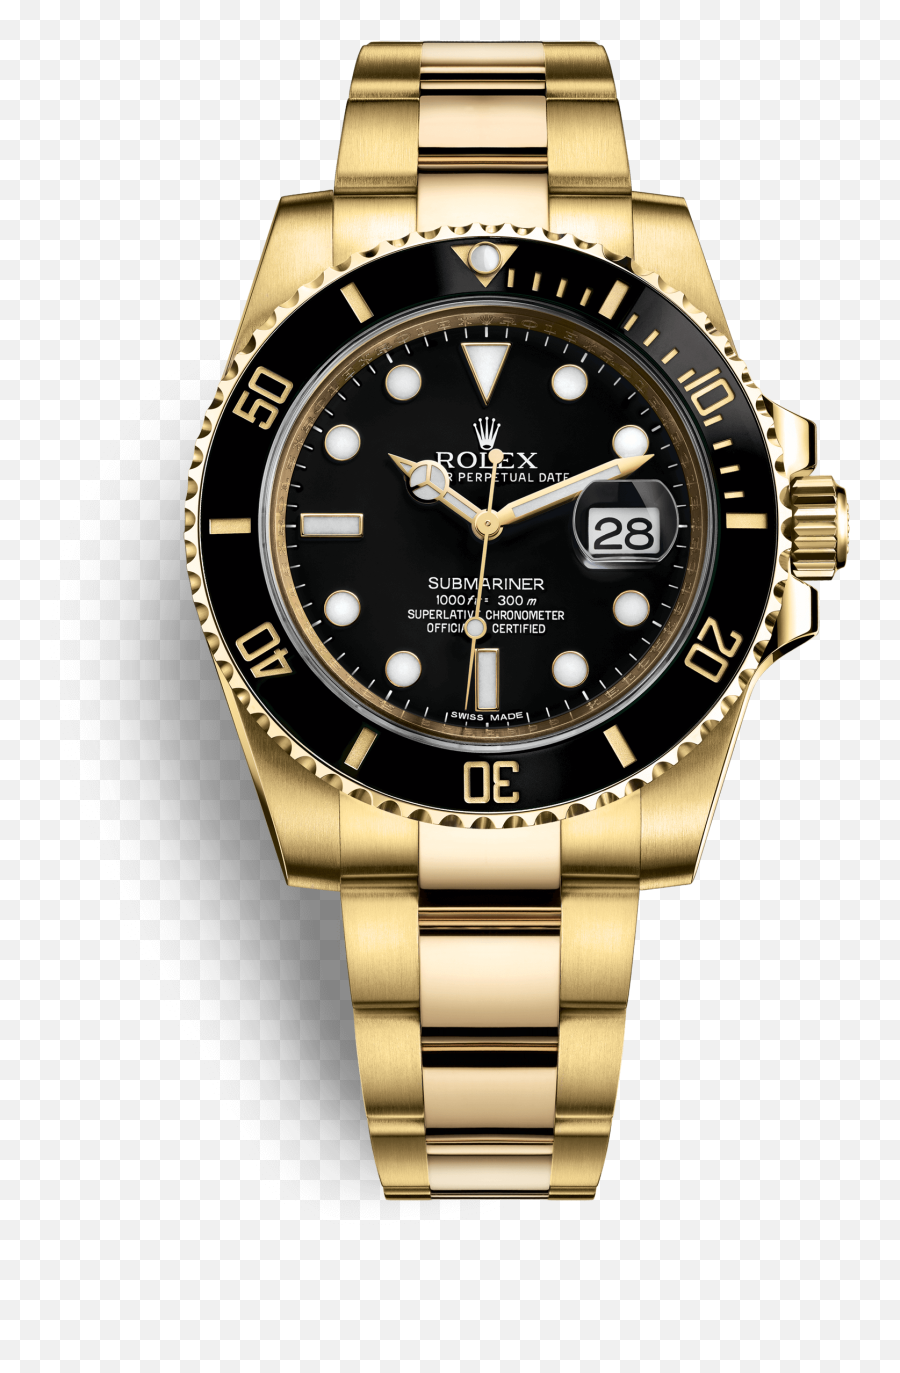 Submariner Watch Rolex Gold Colored - Submariner Date Two Tone Emoji,Find The Emoji Rolex